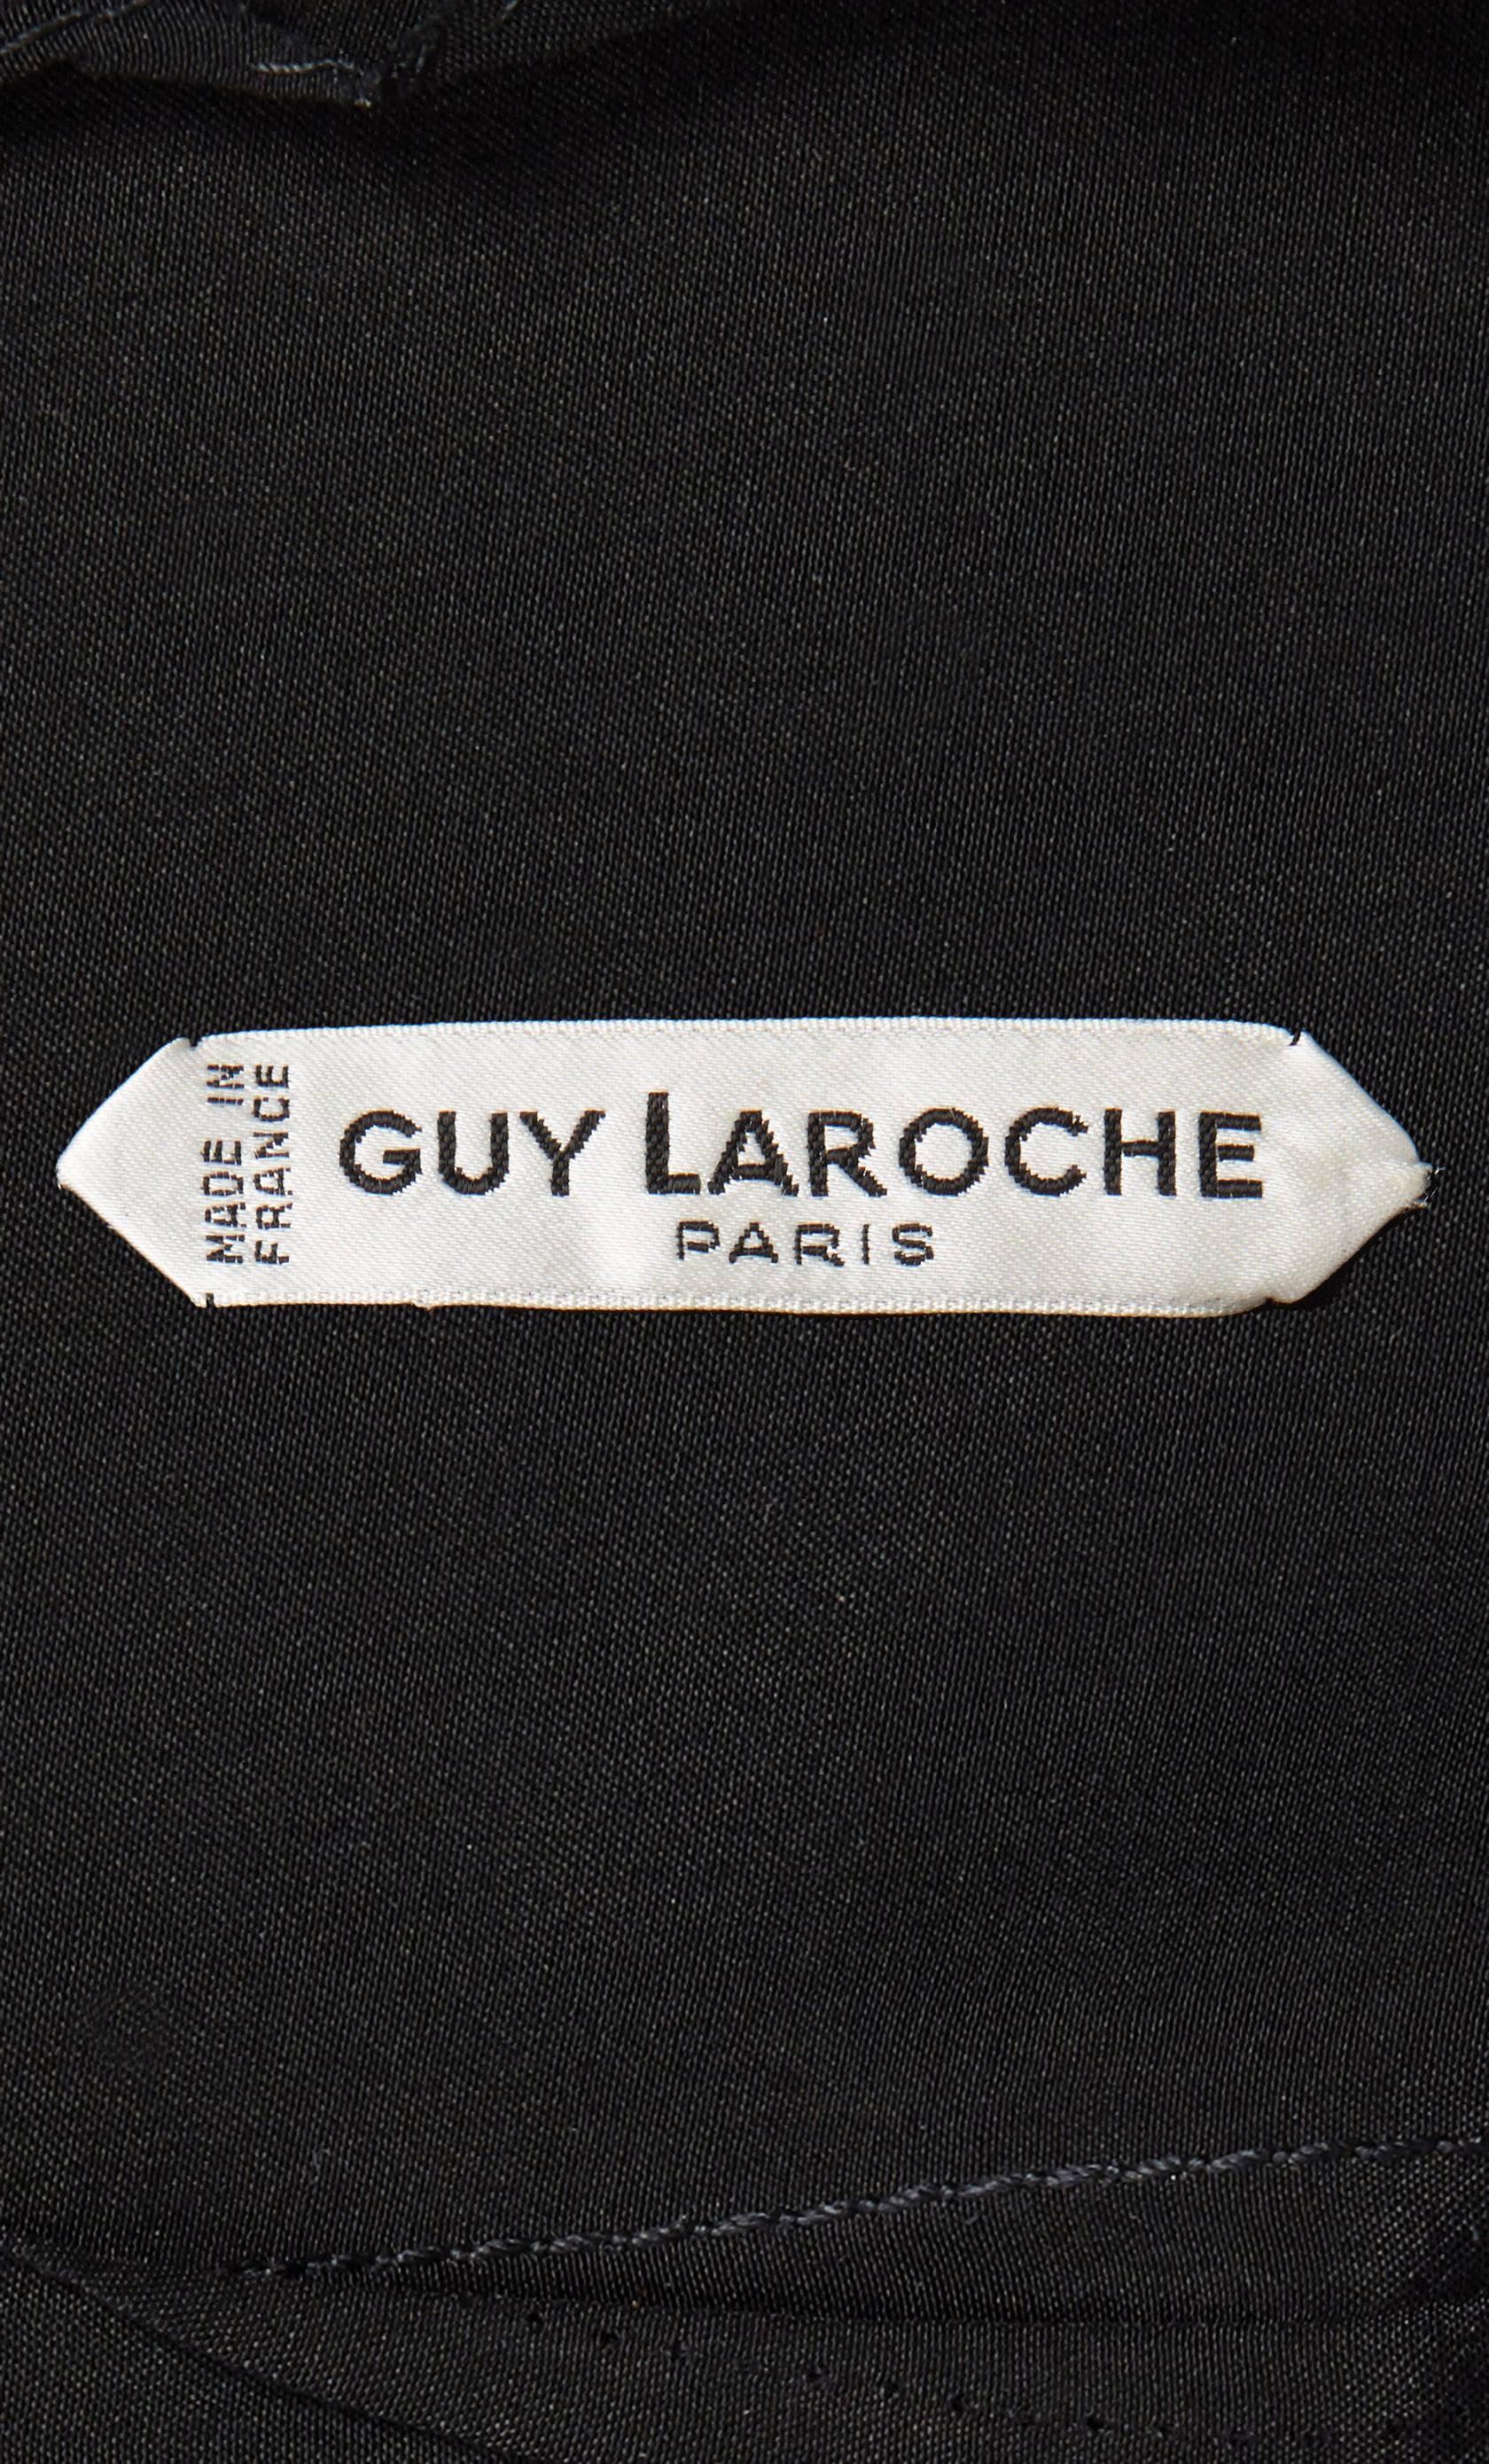 Guy Laroche haute couture black dress, circa 1965 In Excellent Condition For Sale In London, GB